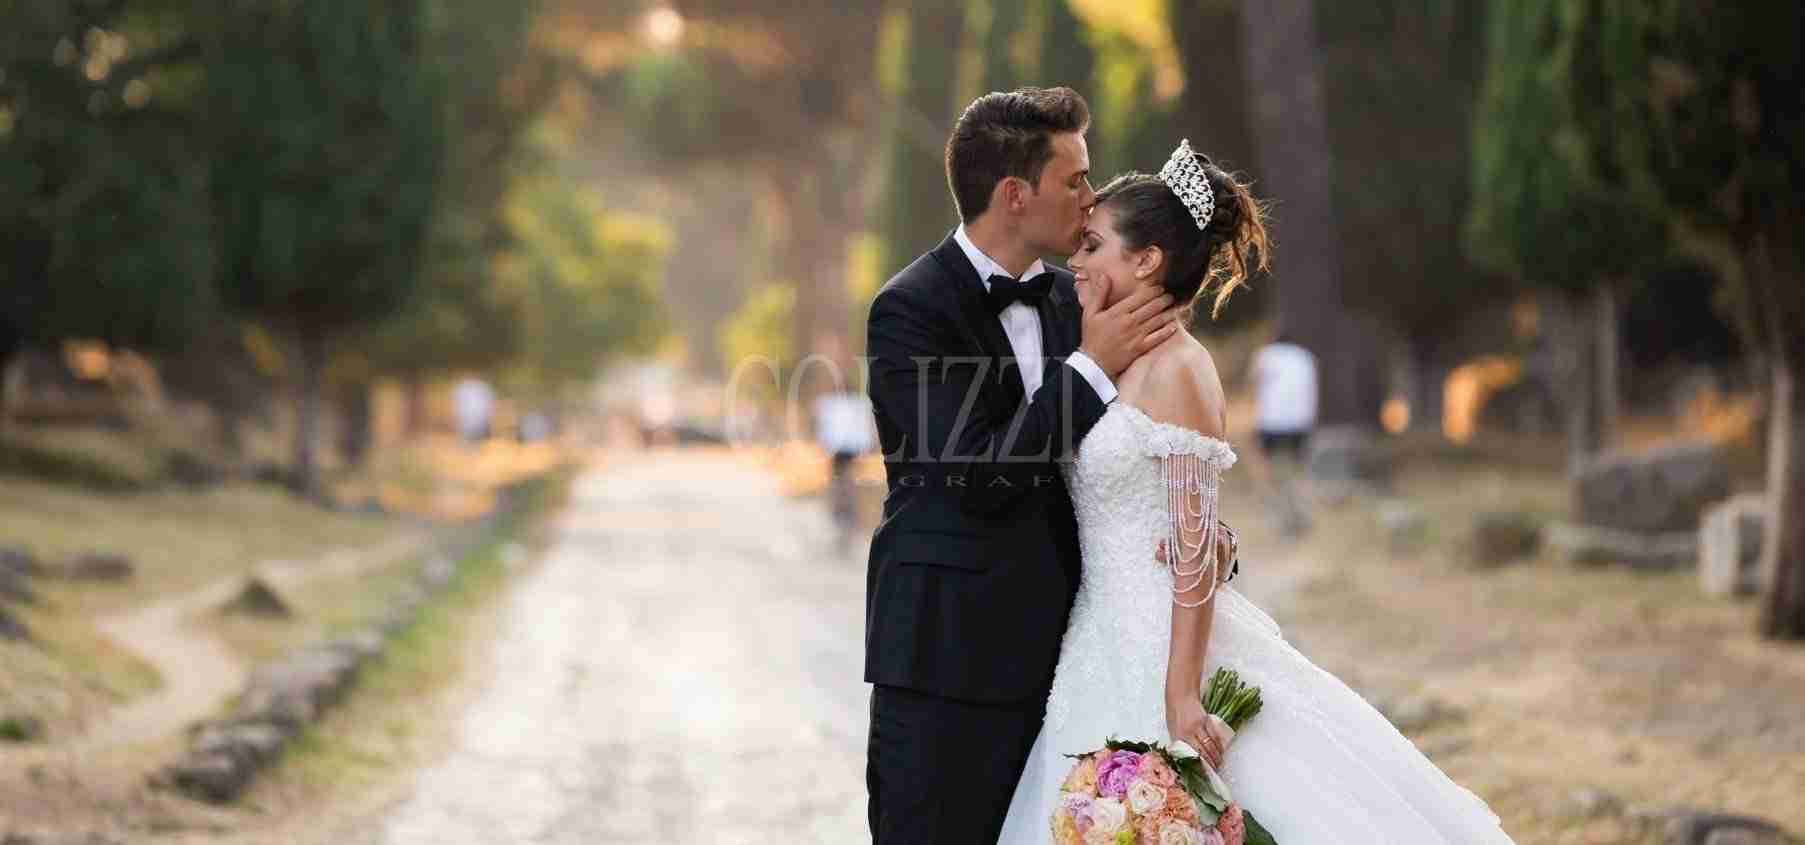 Accessori Sposa: alcuni consigli utili sul Dress Code